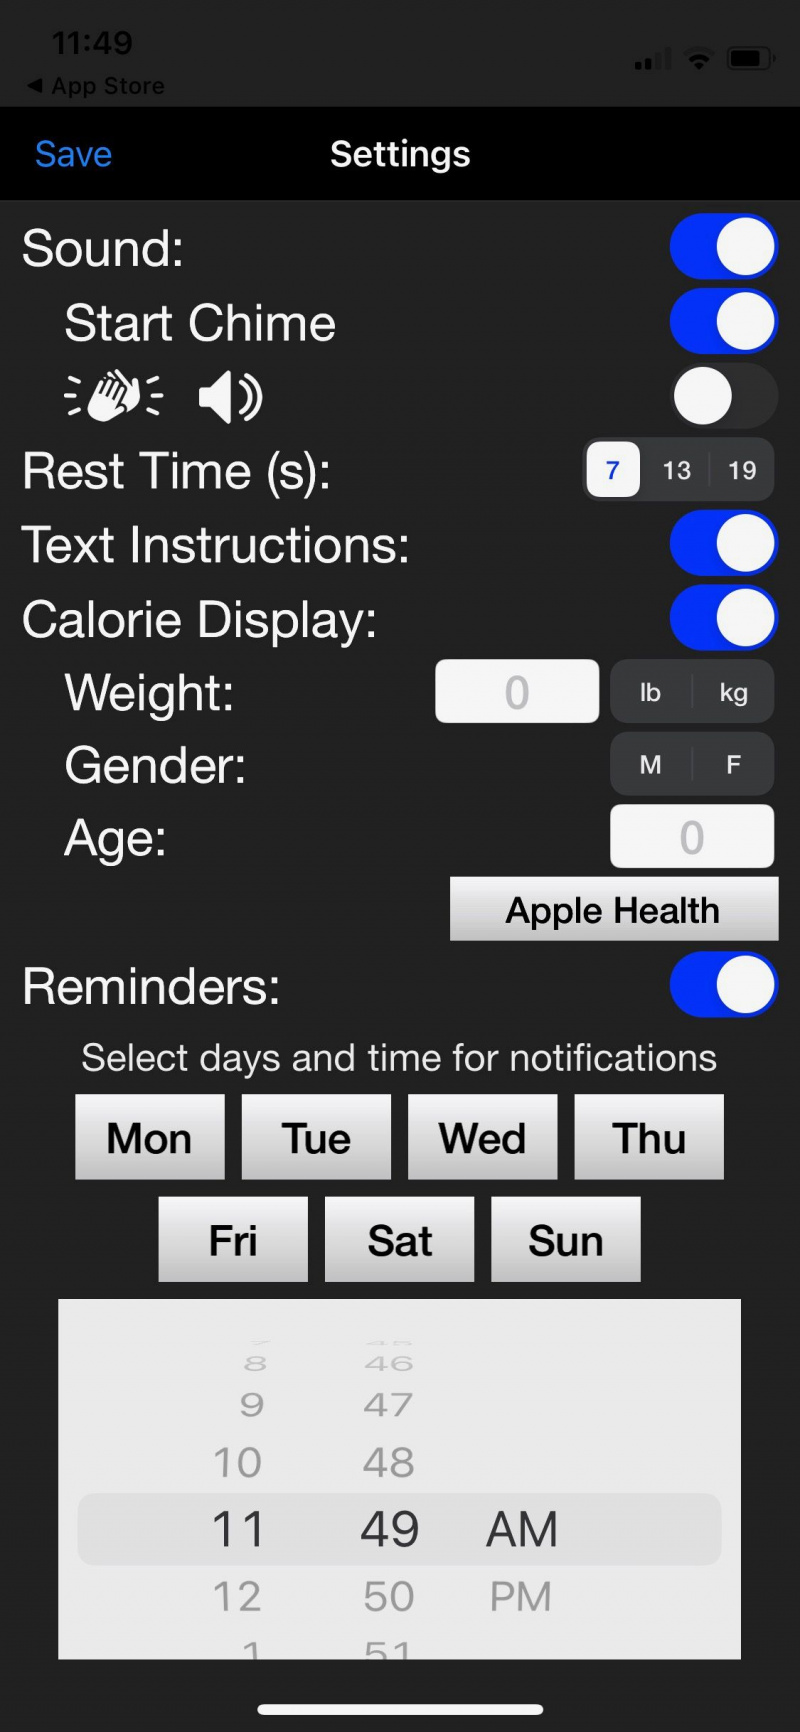   Екранна снимка на Daily abs, показваща настройките на приложението